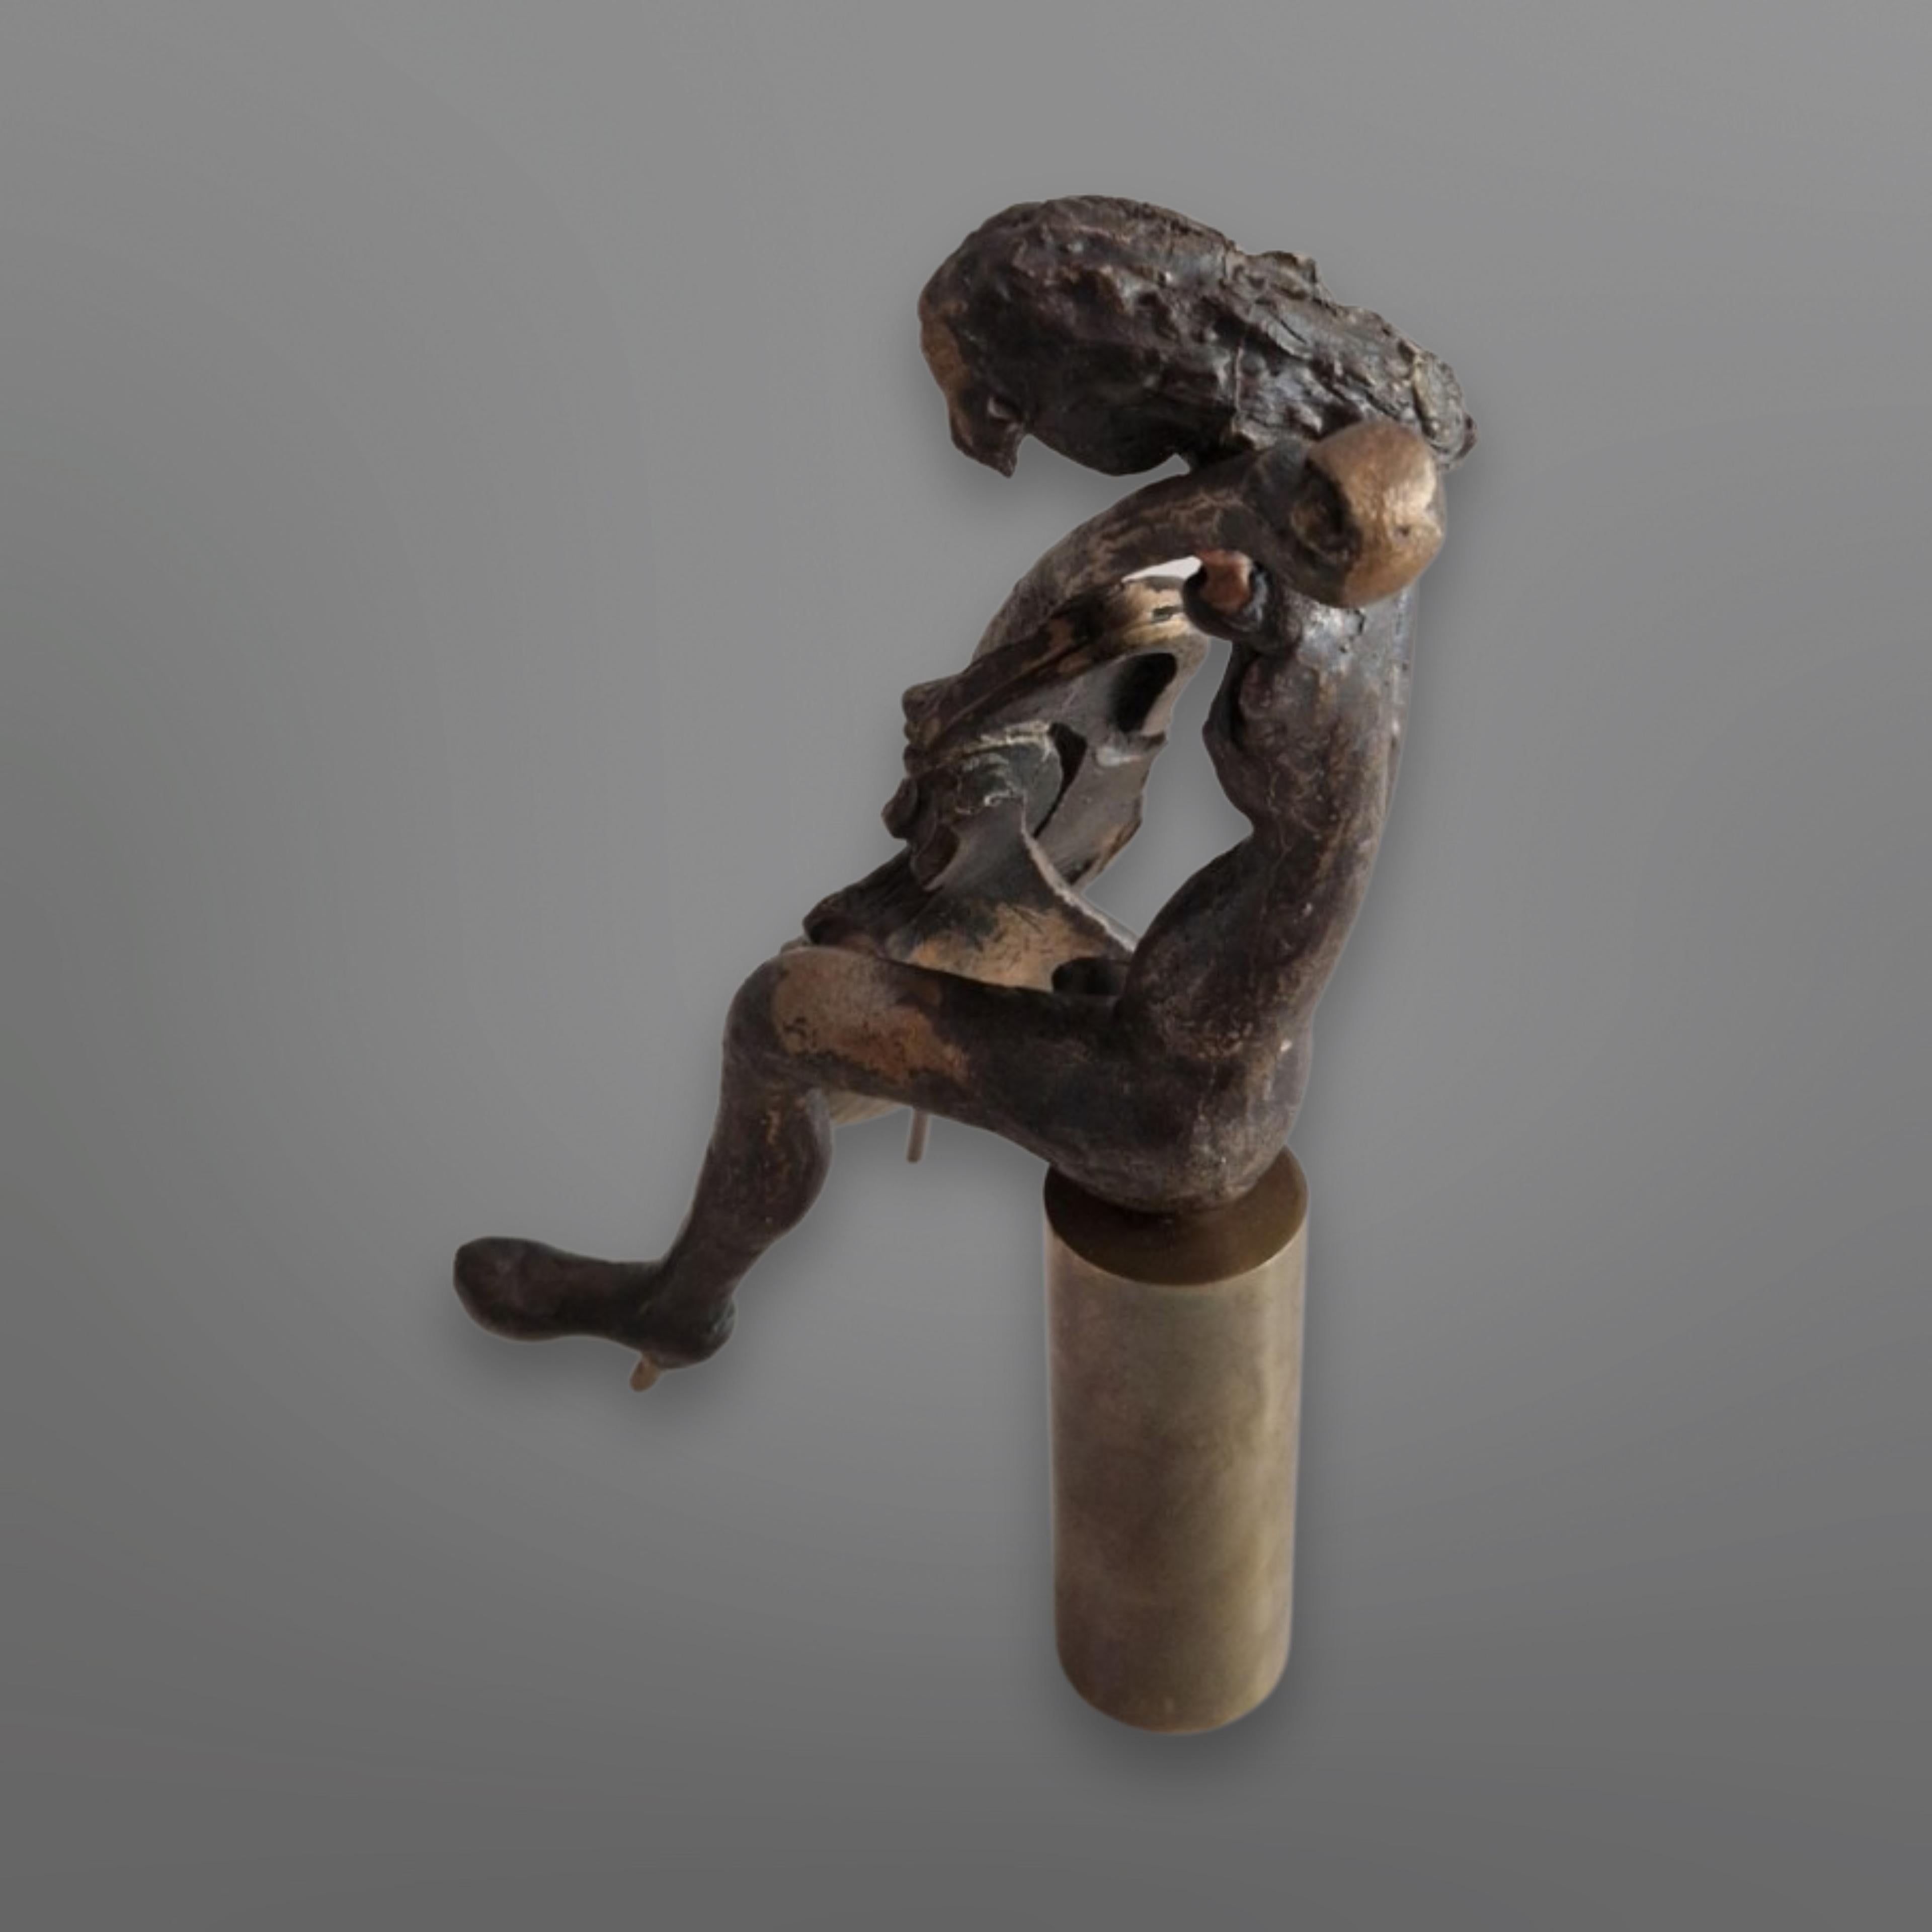 Petit bronze coulé  statue abstraite. Elle représente une joueuse de violoncelle assise sur un tabouret rond. Il est conçu dans le style d'Yves Lohé. Aucune signature ou marque n'est visible. 

- L'art abstrait utilise le langage visuel de la forme,